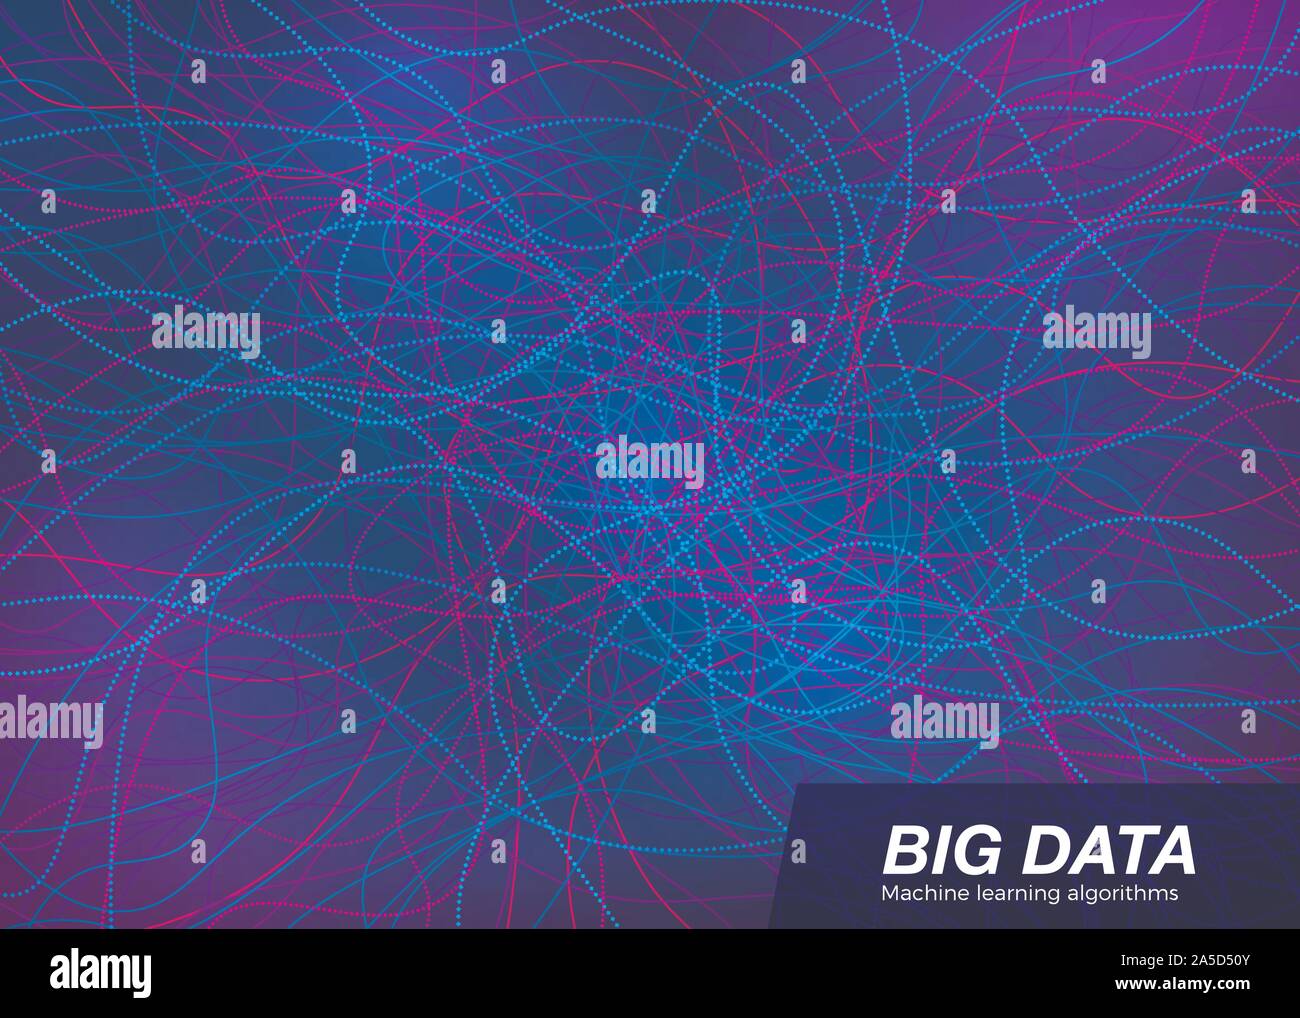 Big Data visuellen Konzept. Abstrakte Technologie Hintergrund. Musik Wellen Komposition. Vektor Stock Vektor